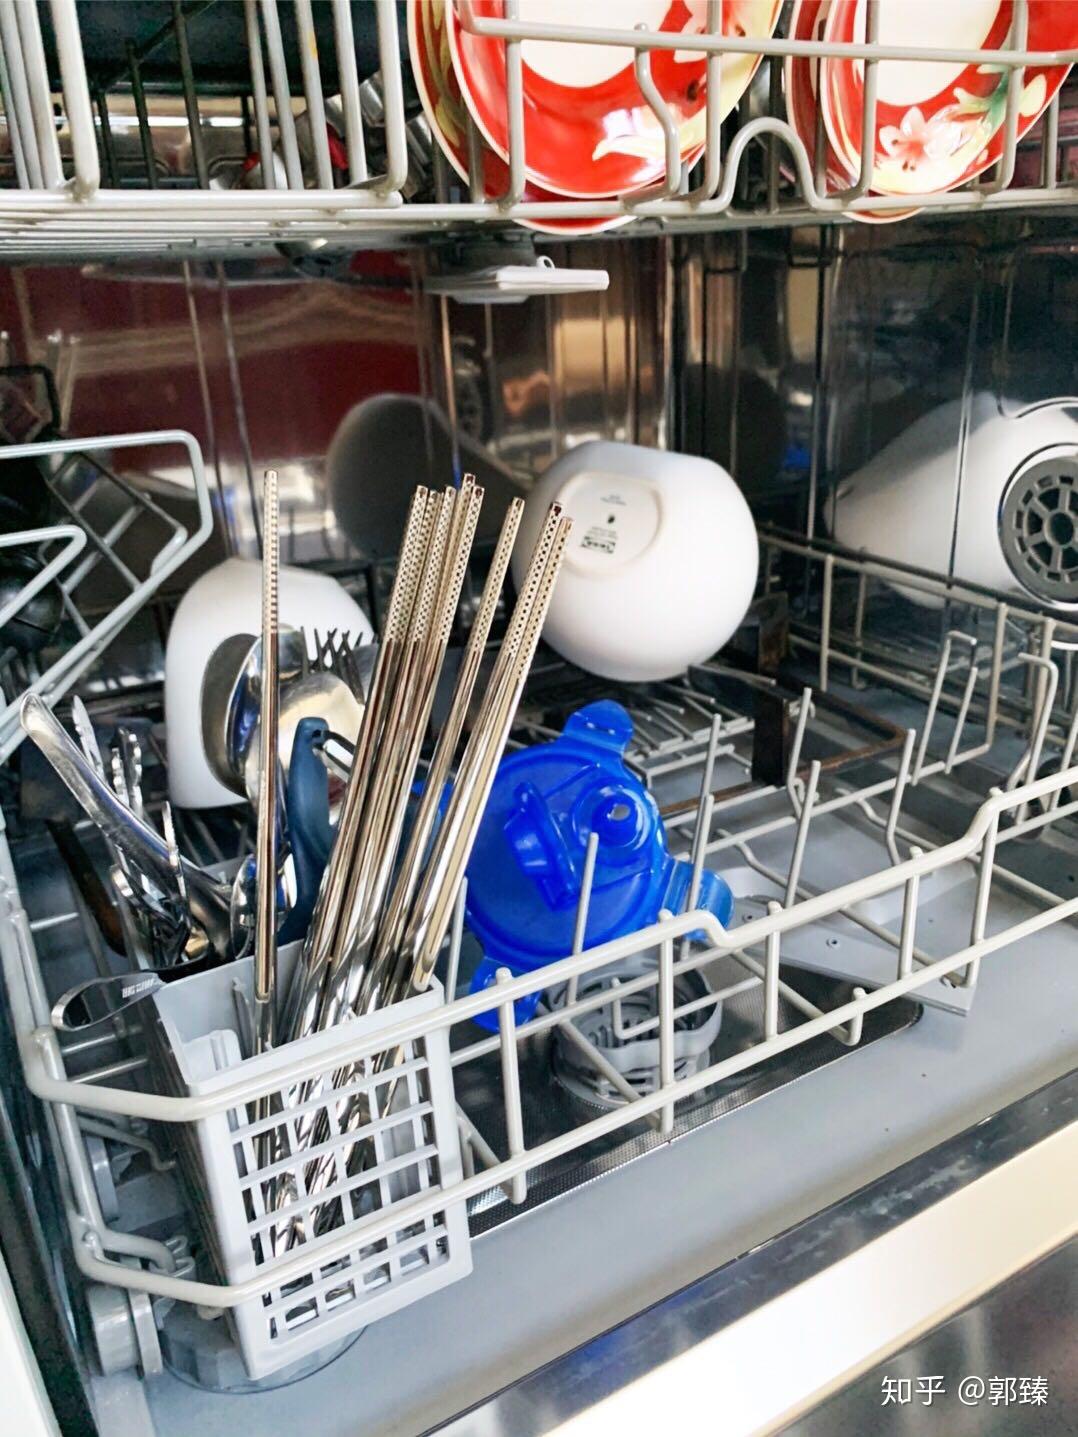 洗碗机实用吗?